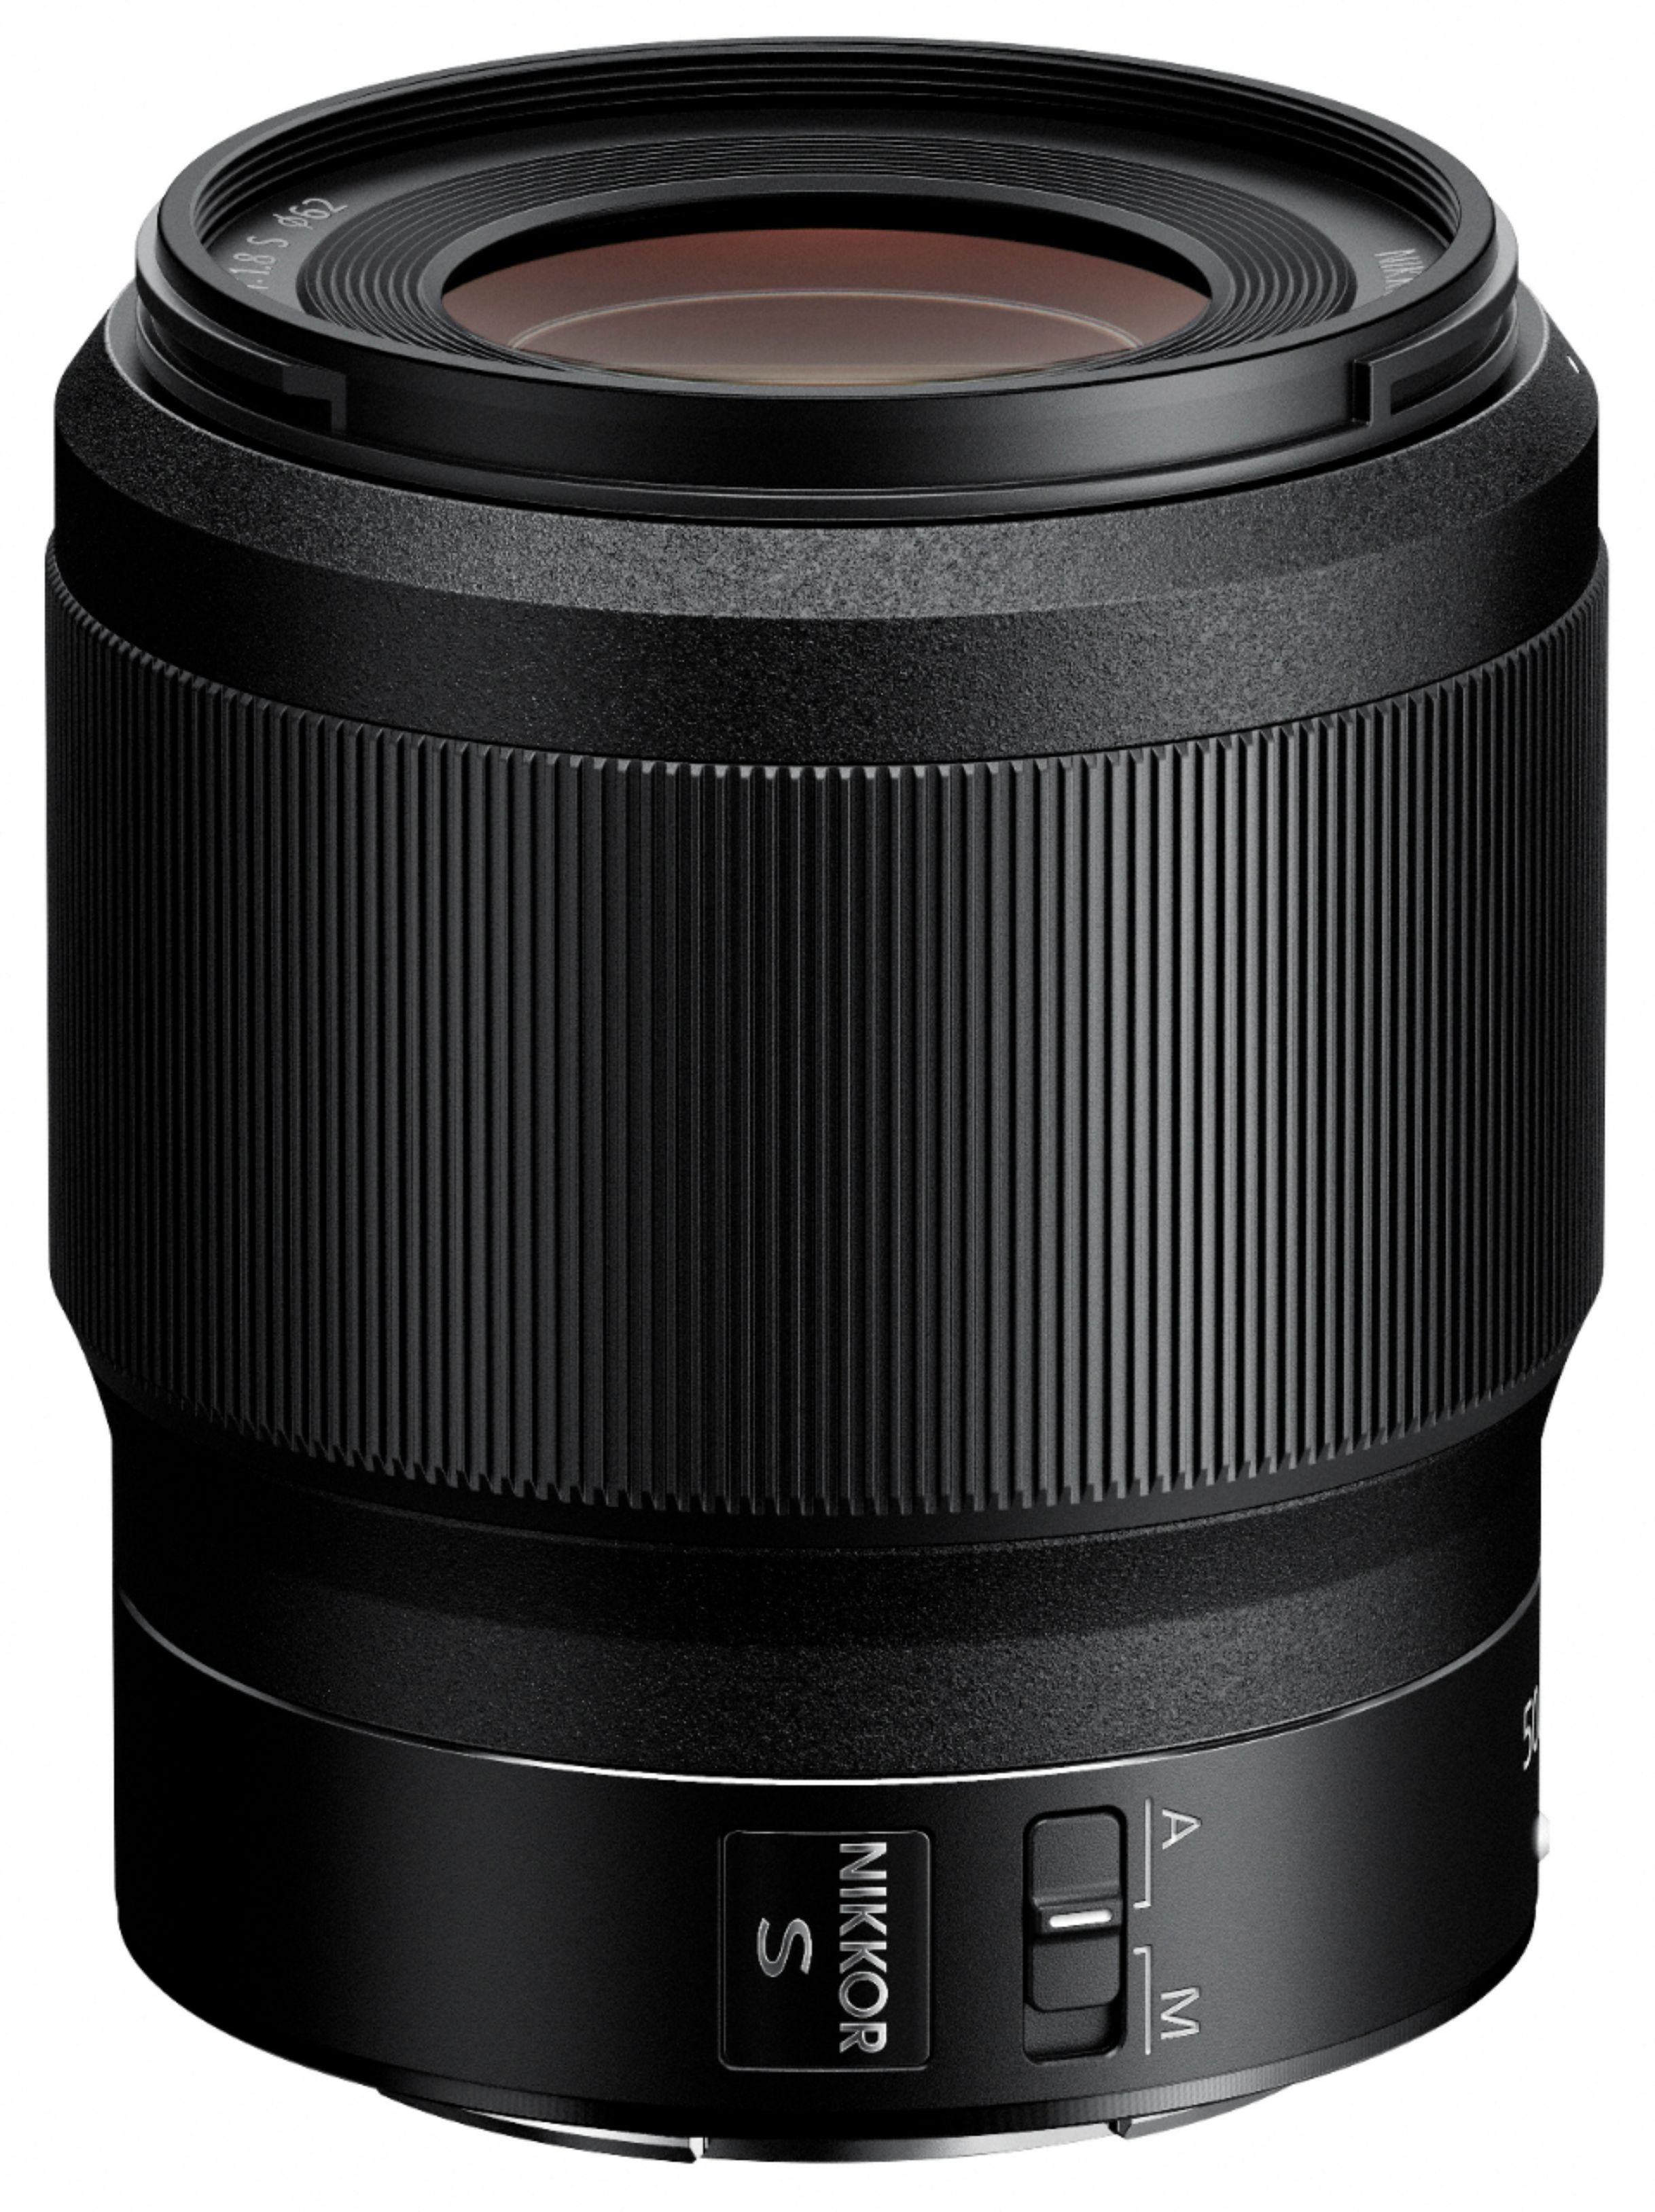 NIKKOR Z 50mm f/1.8 S Standard Prime Lens for Nikon Z Cameras Black 20083 -  Best Buy